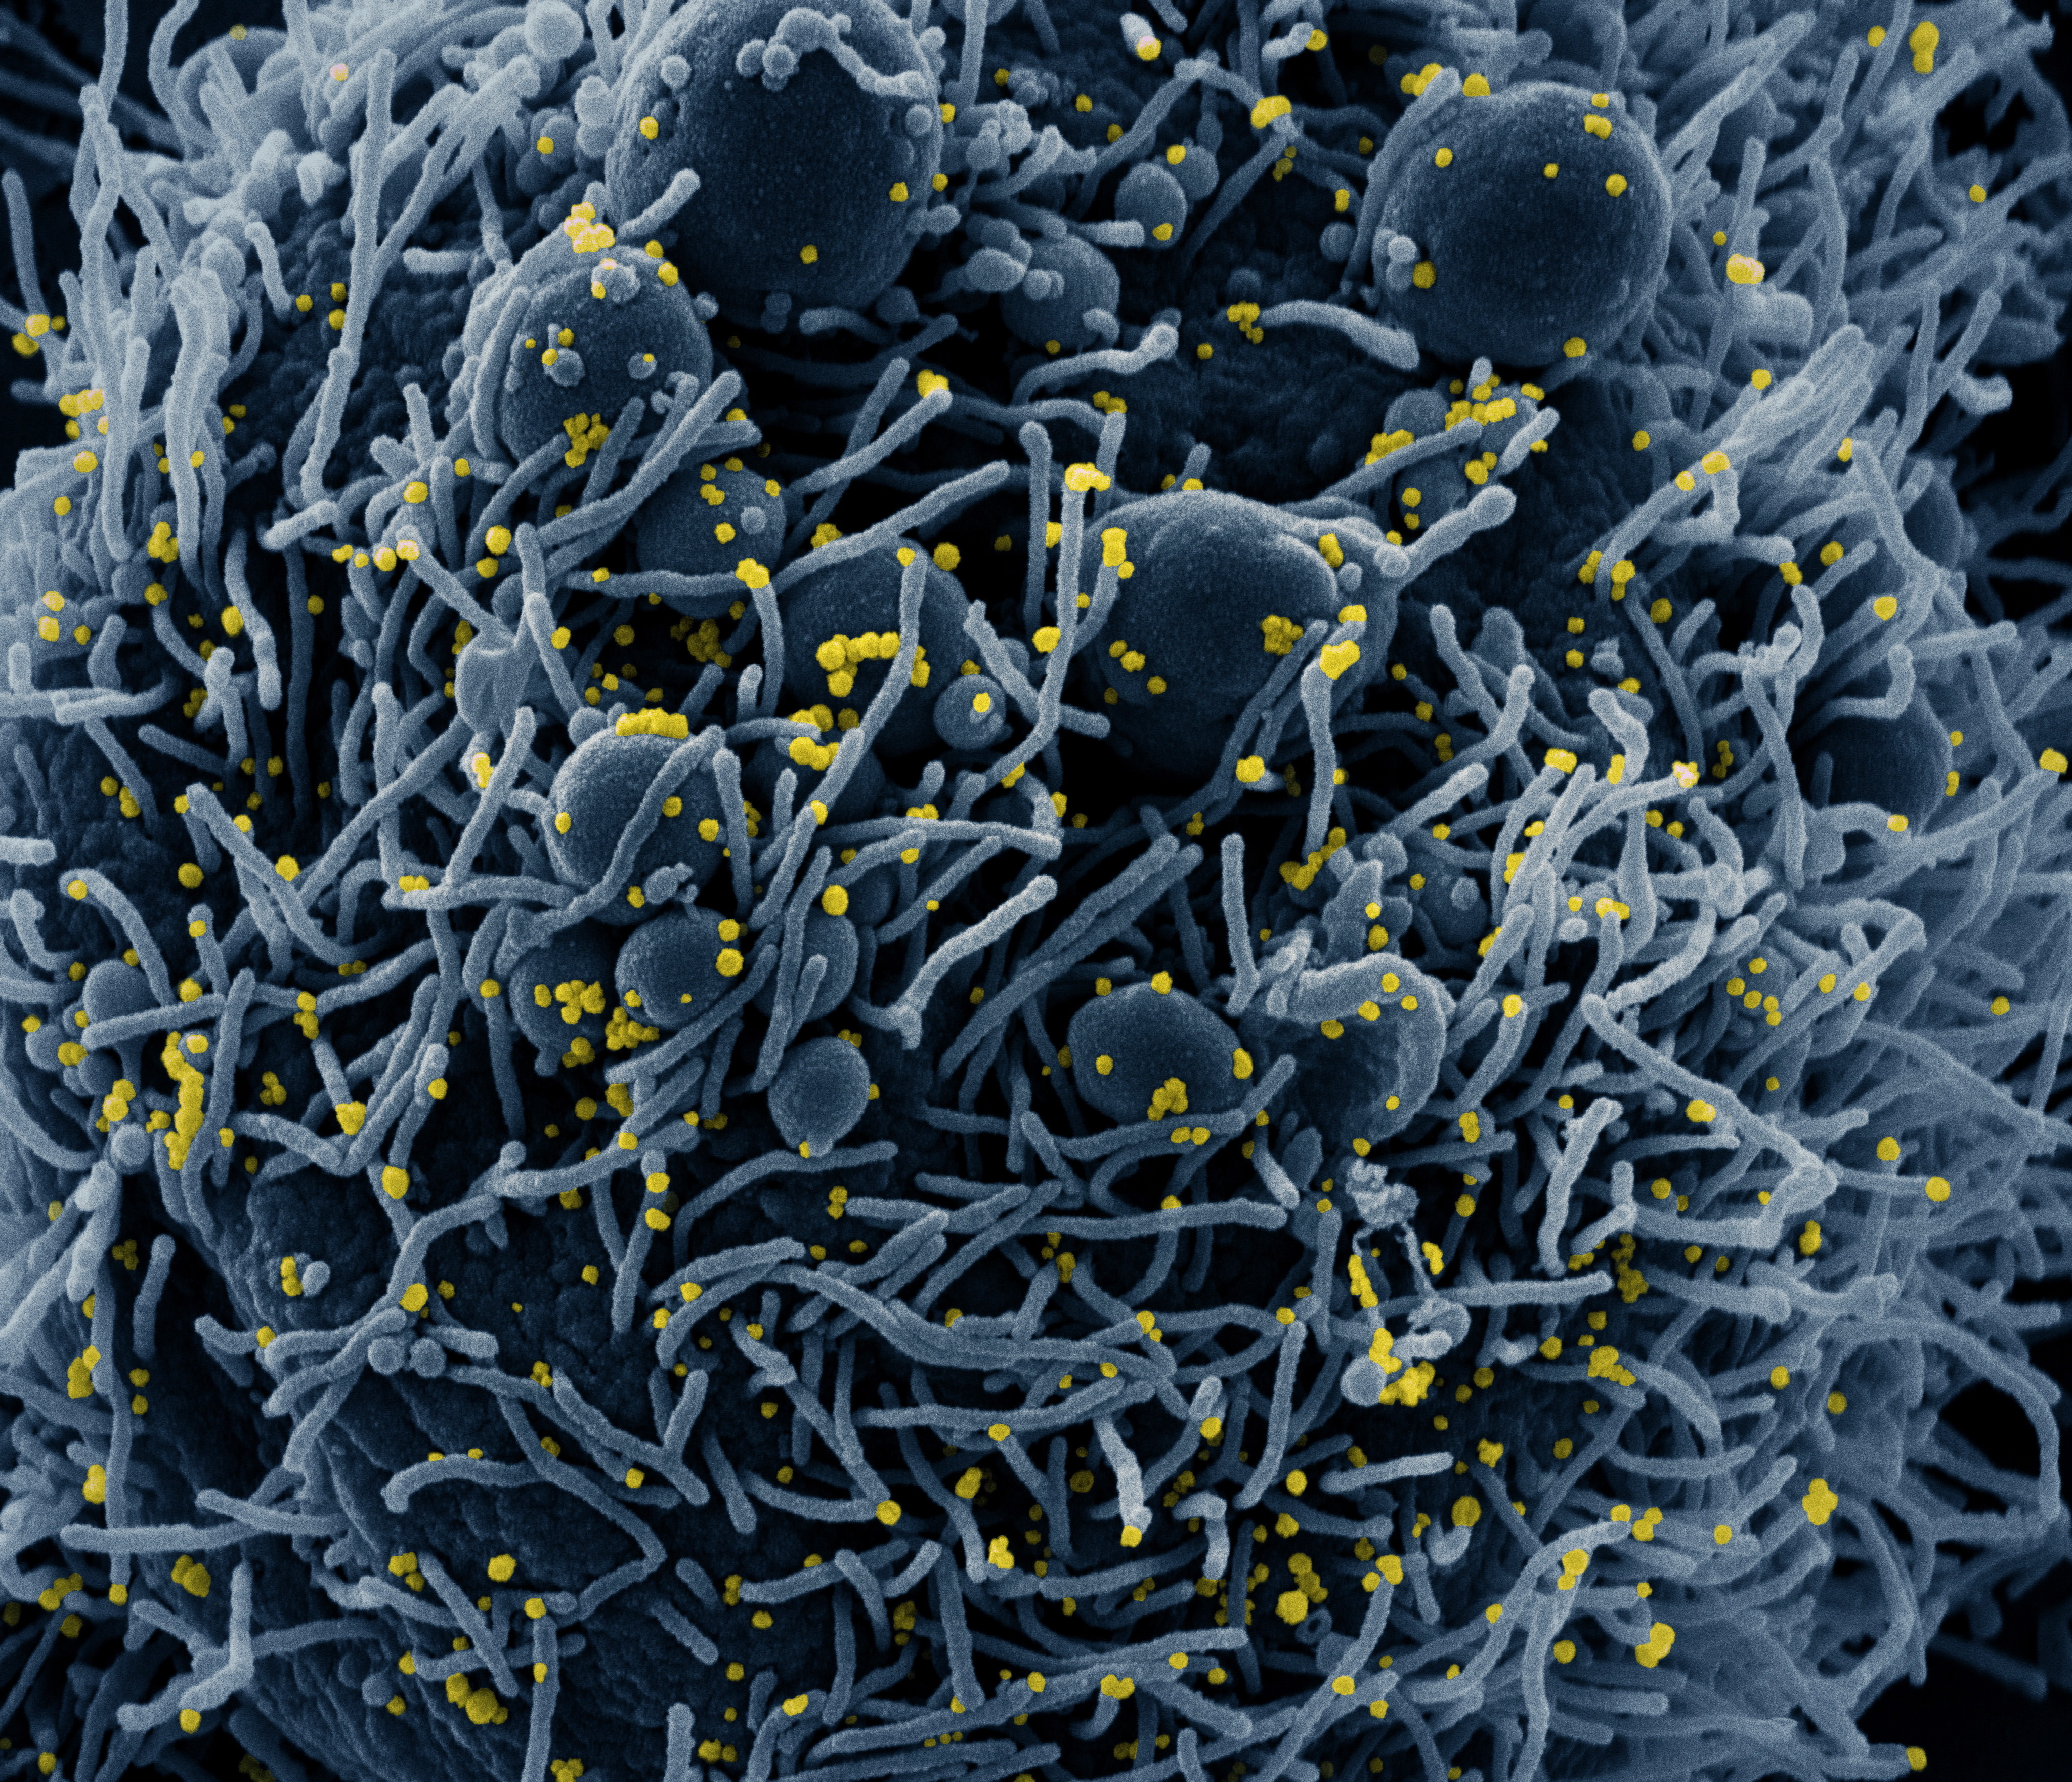 Imagini inedite cu noul coronavirus la microscop. Cum arată acum virusul care a făcut ravagii în lume. GALERIE FOTO